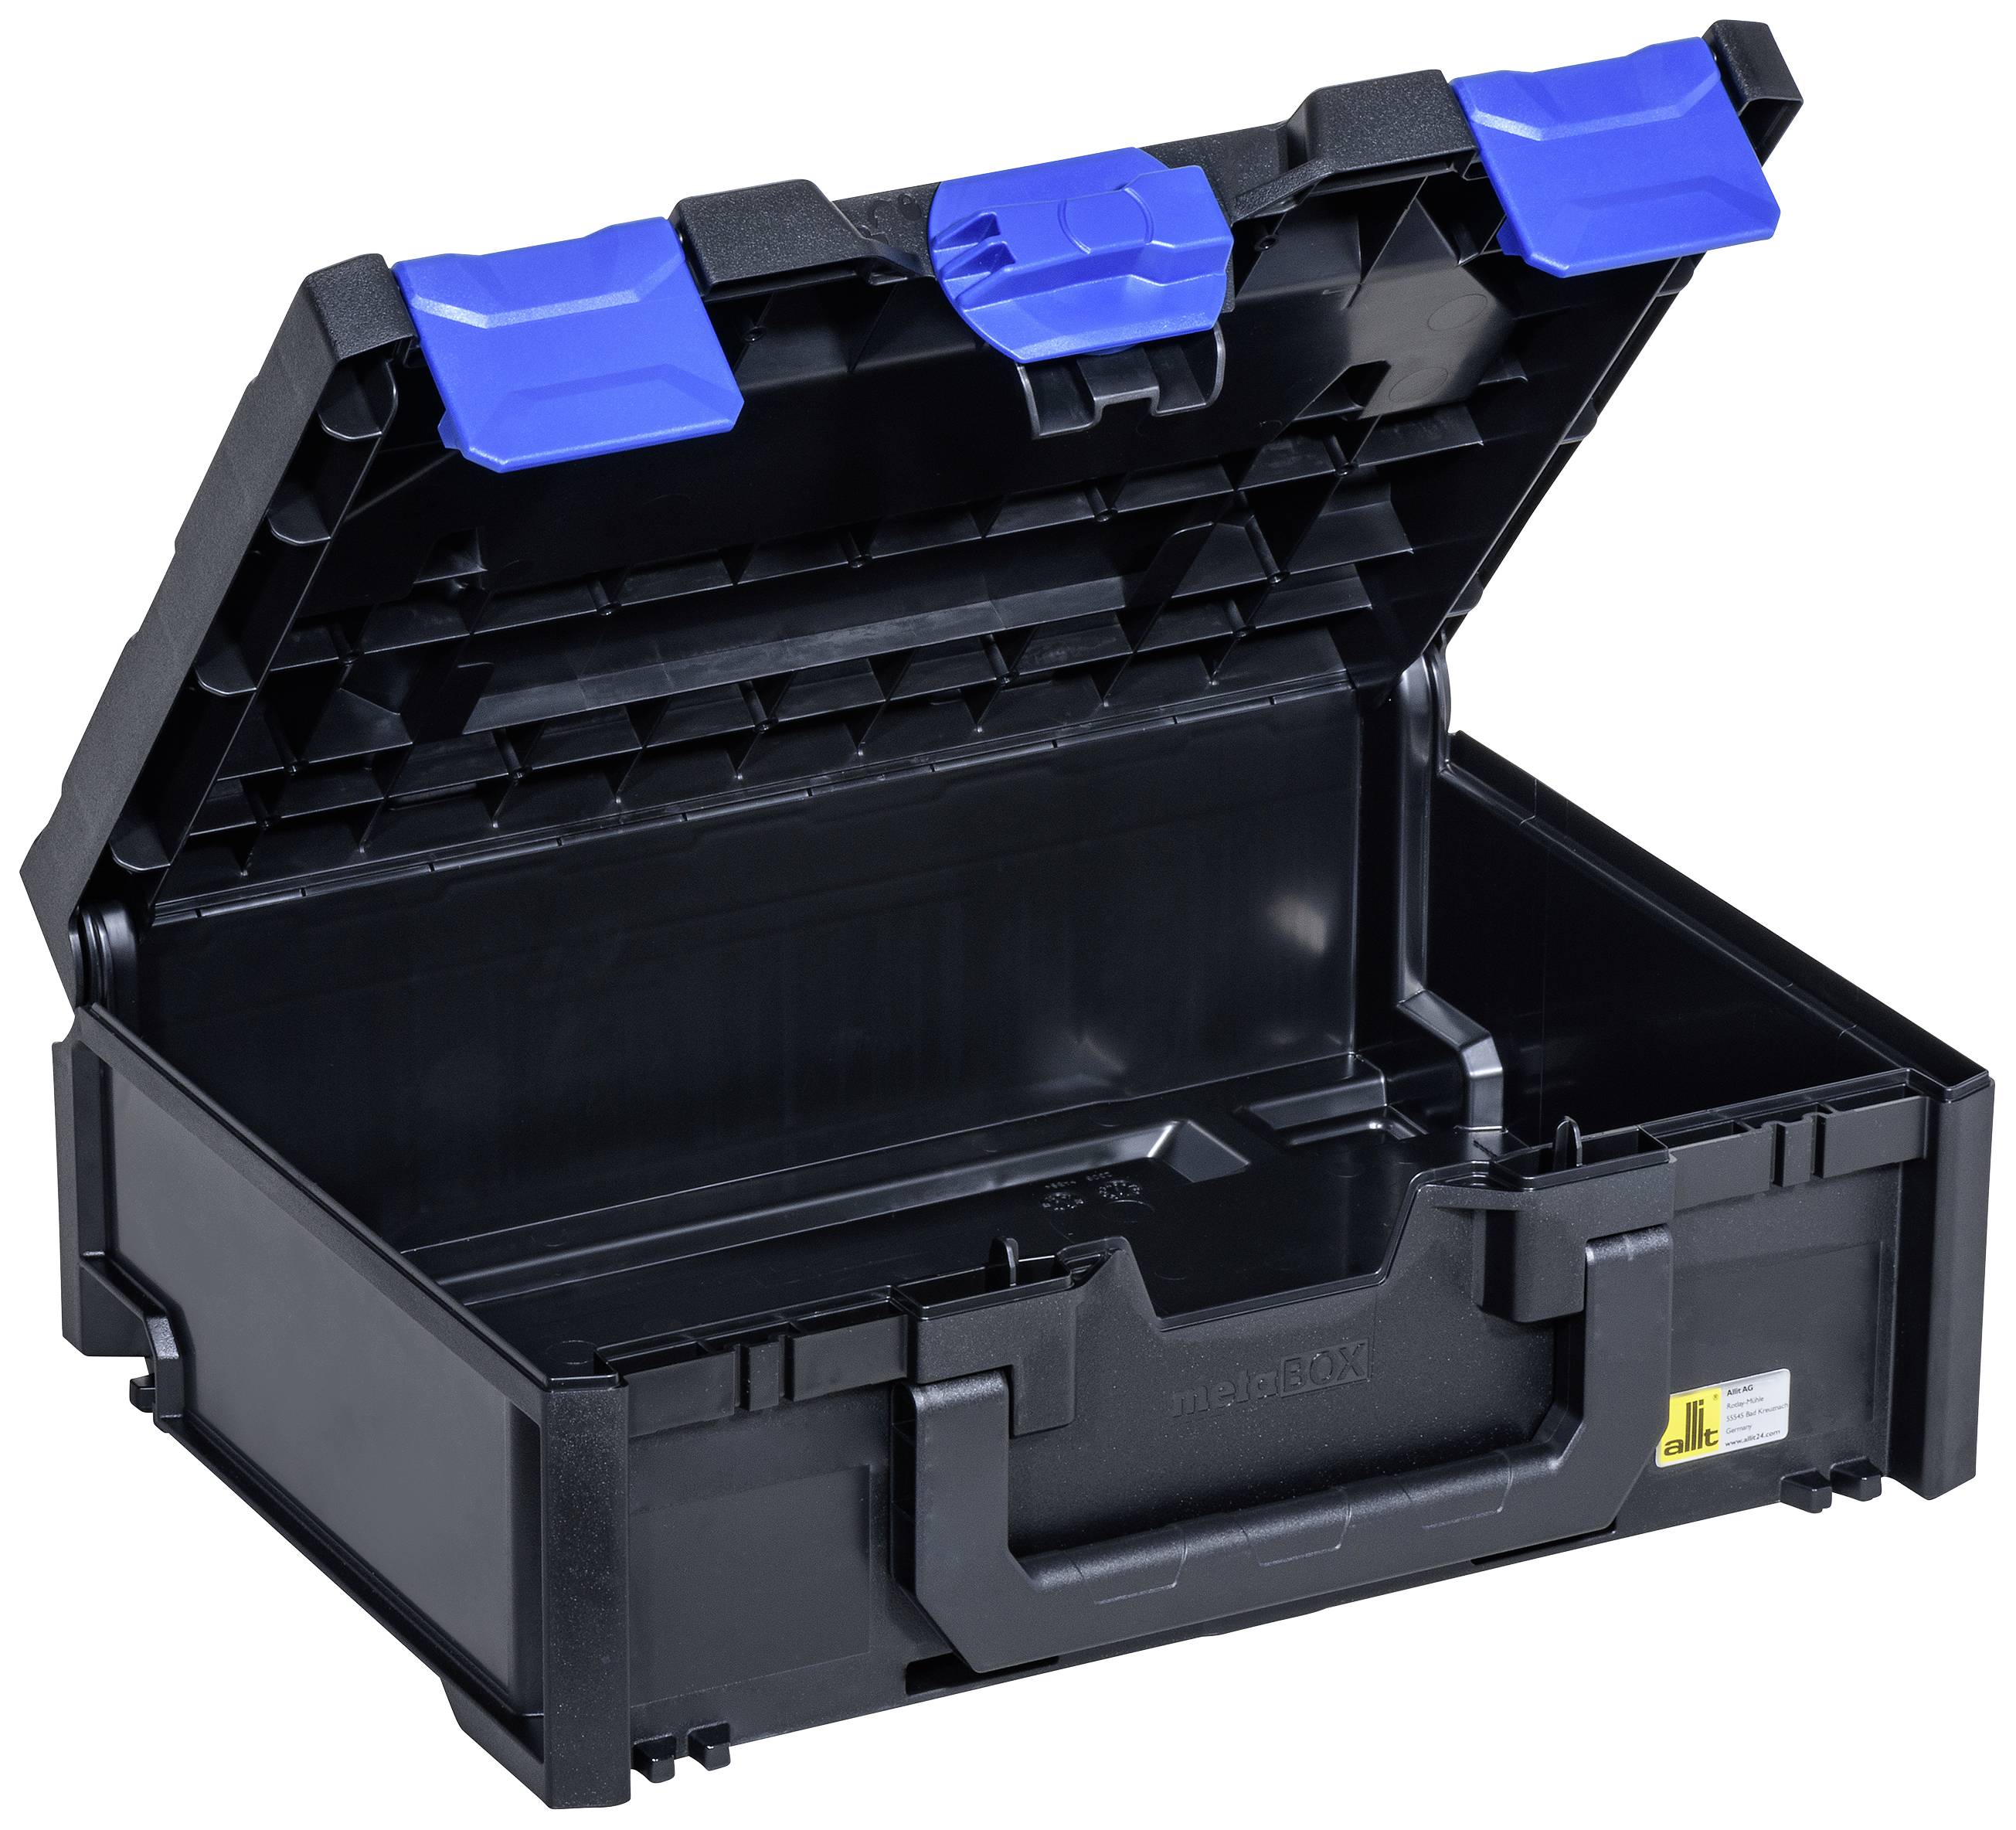 allit Aufbewahrungsbox EuroPlus MetaBox 145, schwarz/blau aus ABS-Kunststoff, sicheres Kopplungssyst